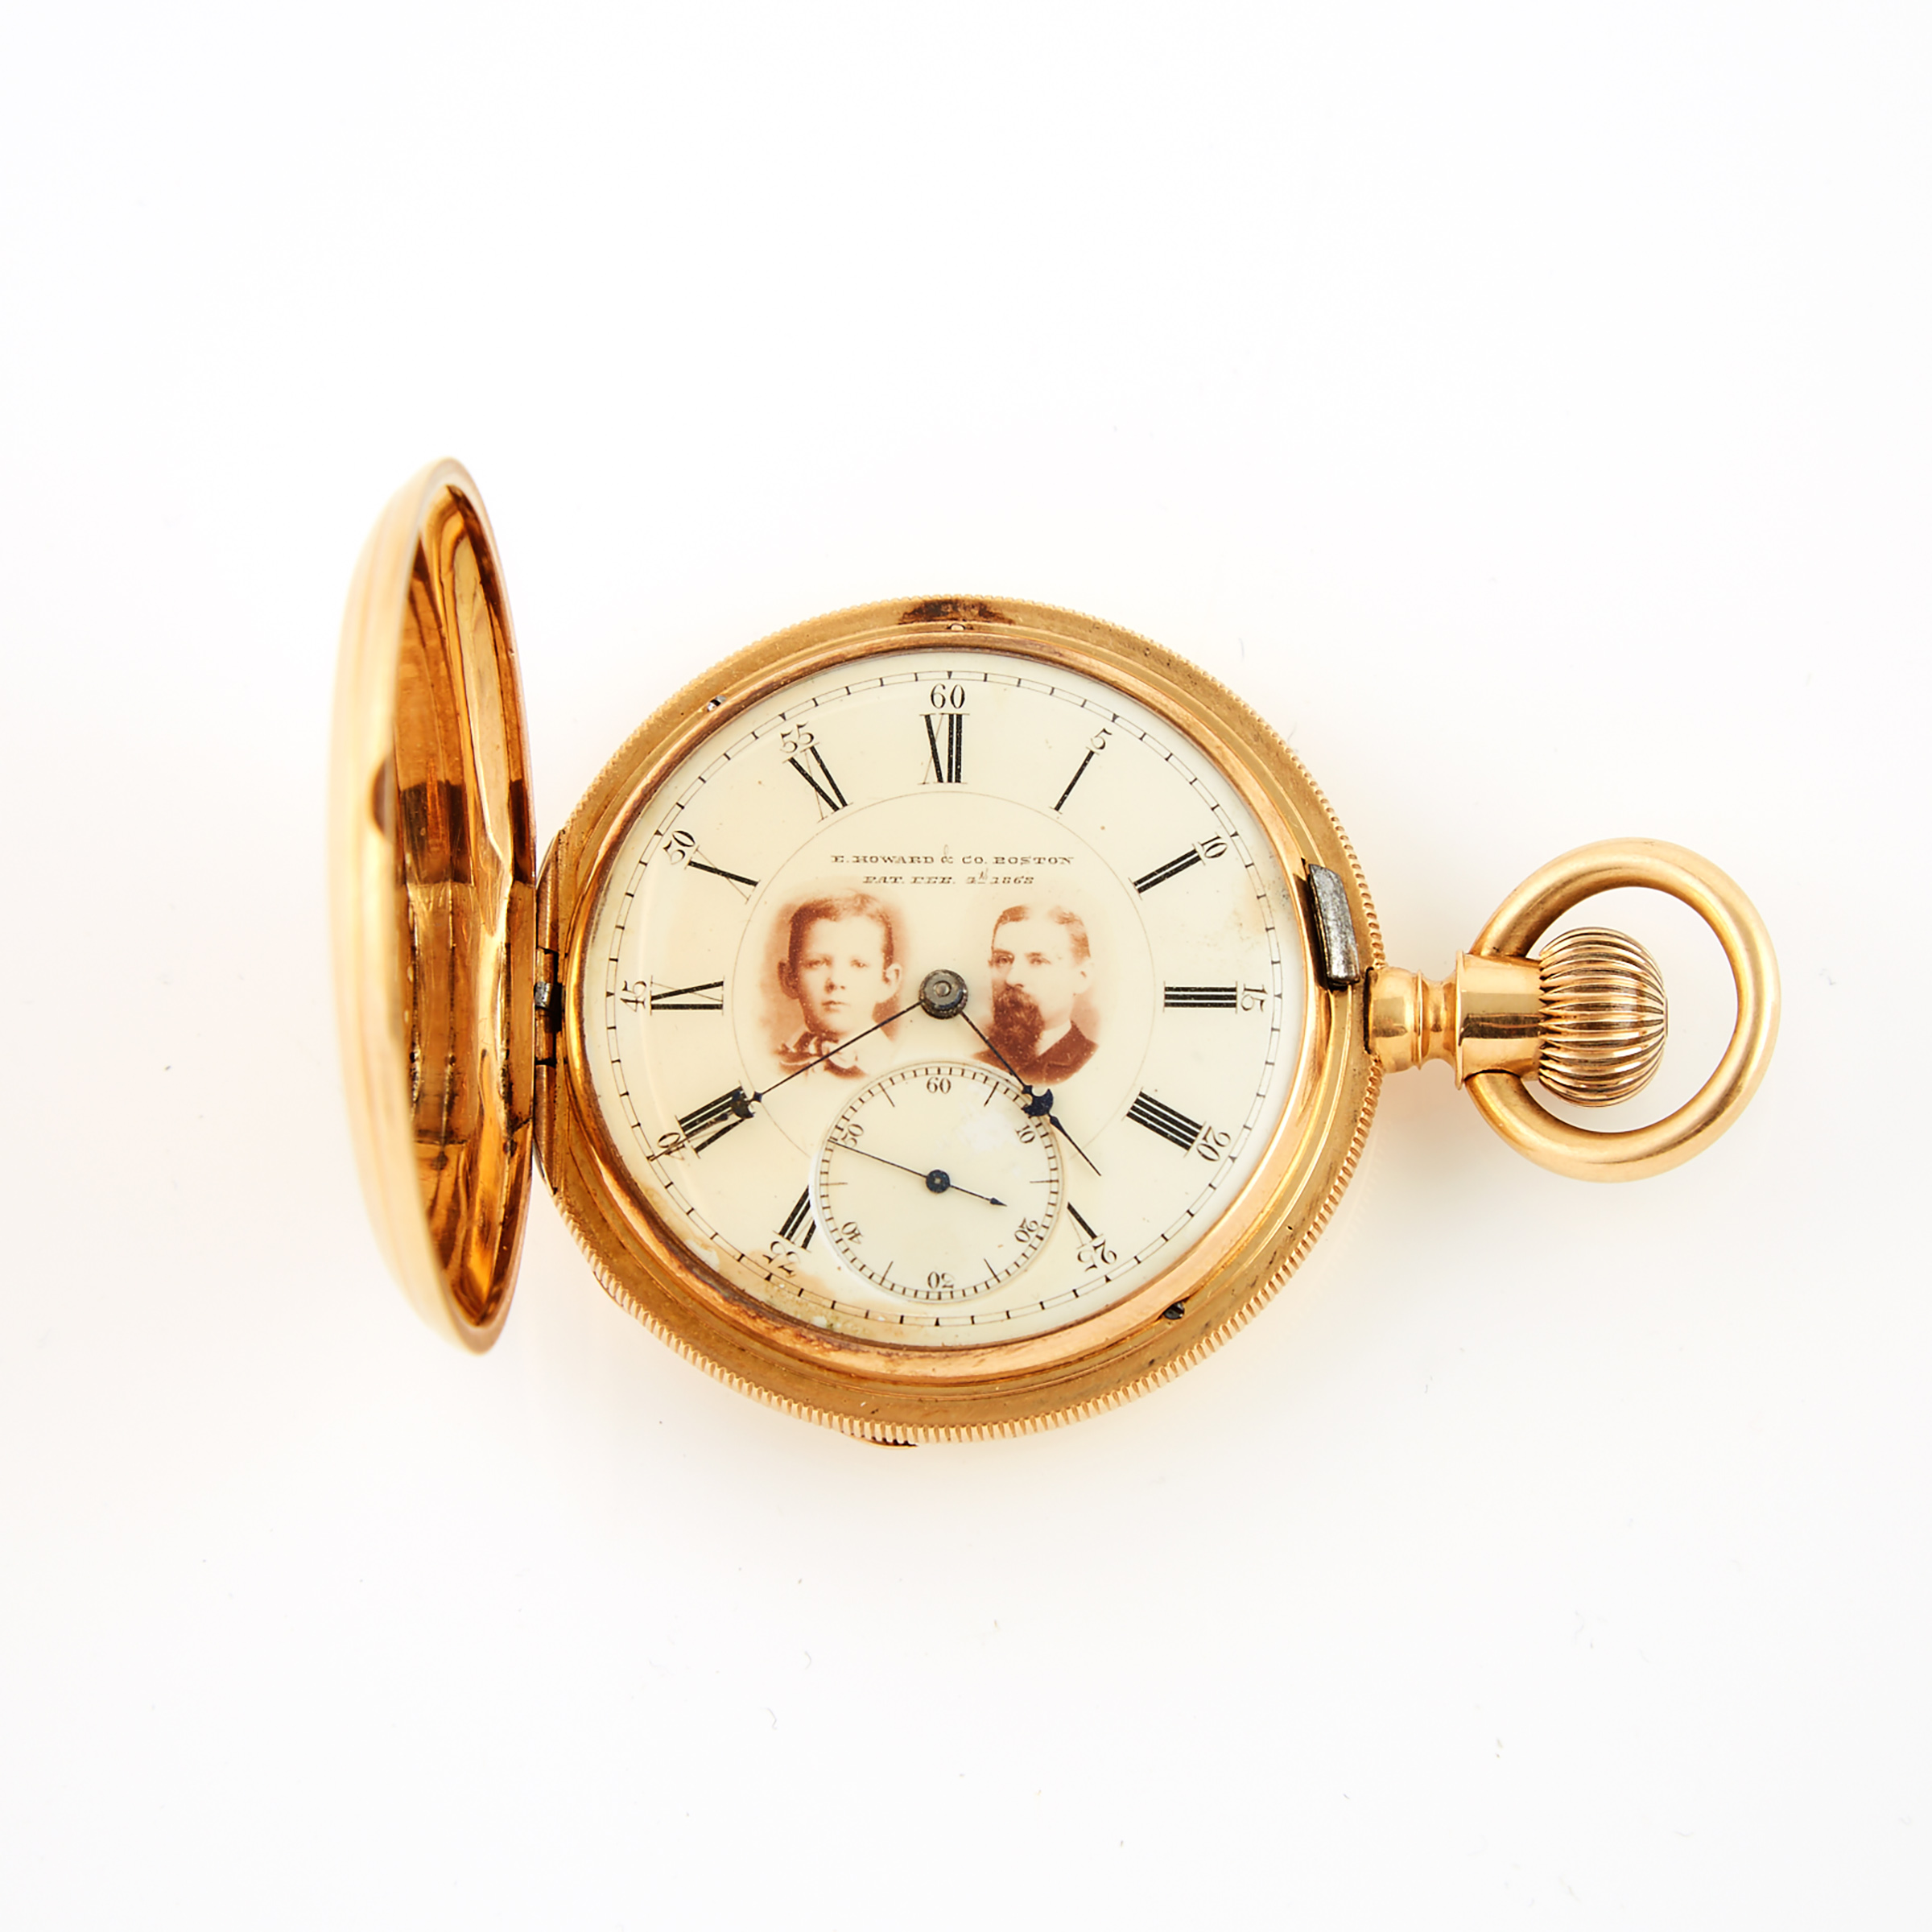 E.Howard & Co., Boston Stemwind Pocket Watch